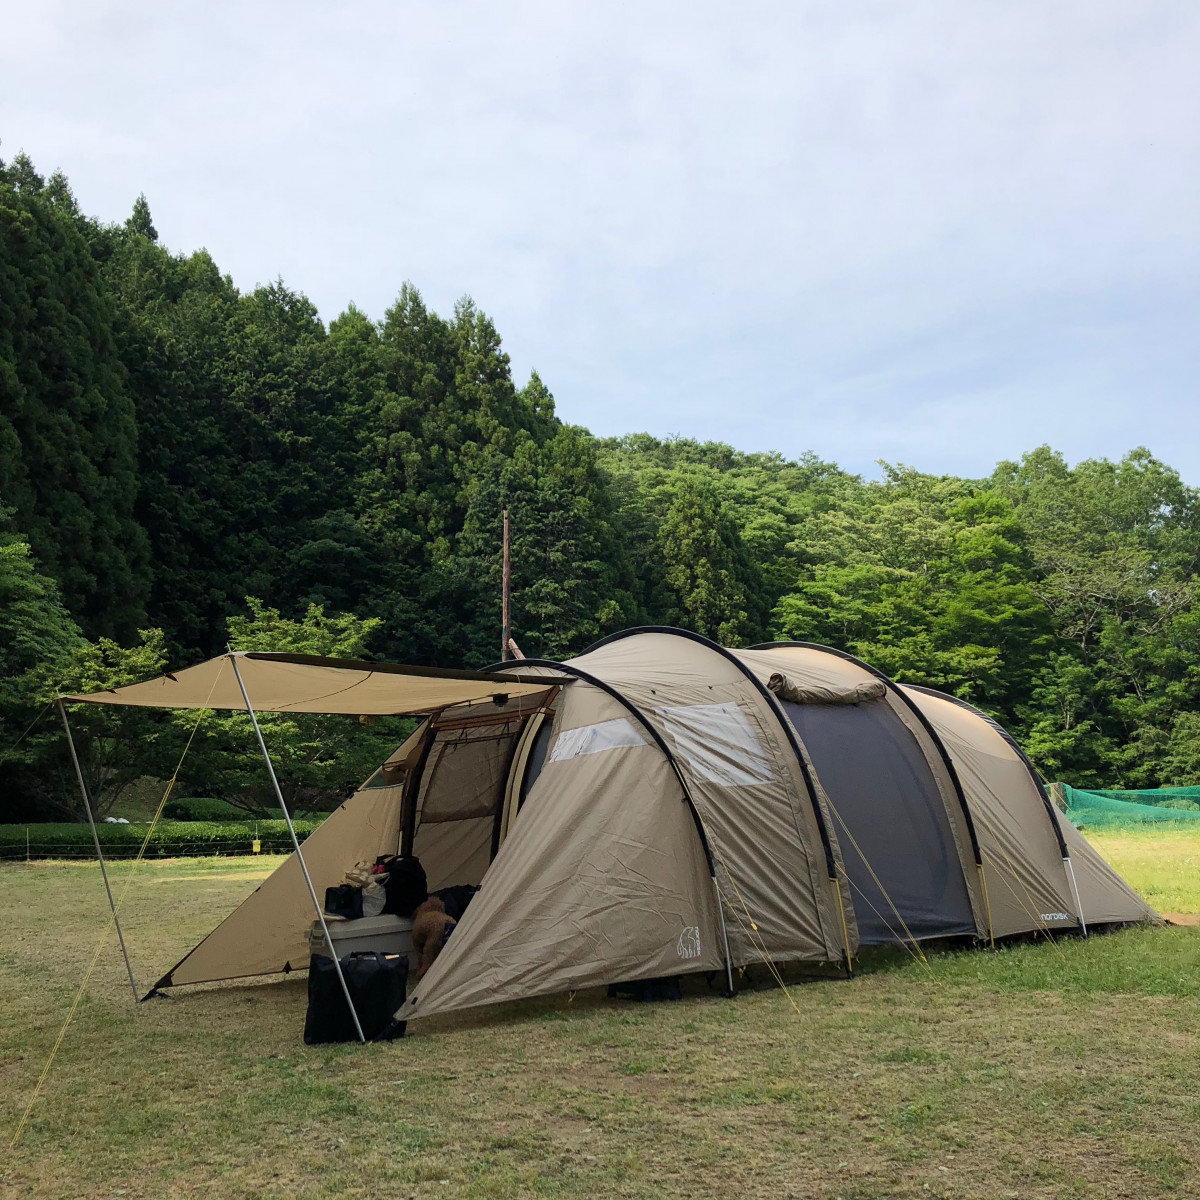 ファミリーキャンプのお供に 山岳系テント Msr エリクサー4 という提案 Yagai ヤガイ 外遊びをみんなで楽しく